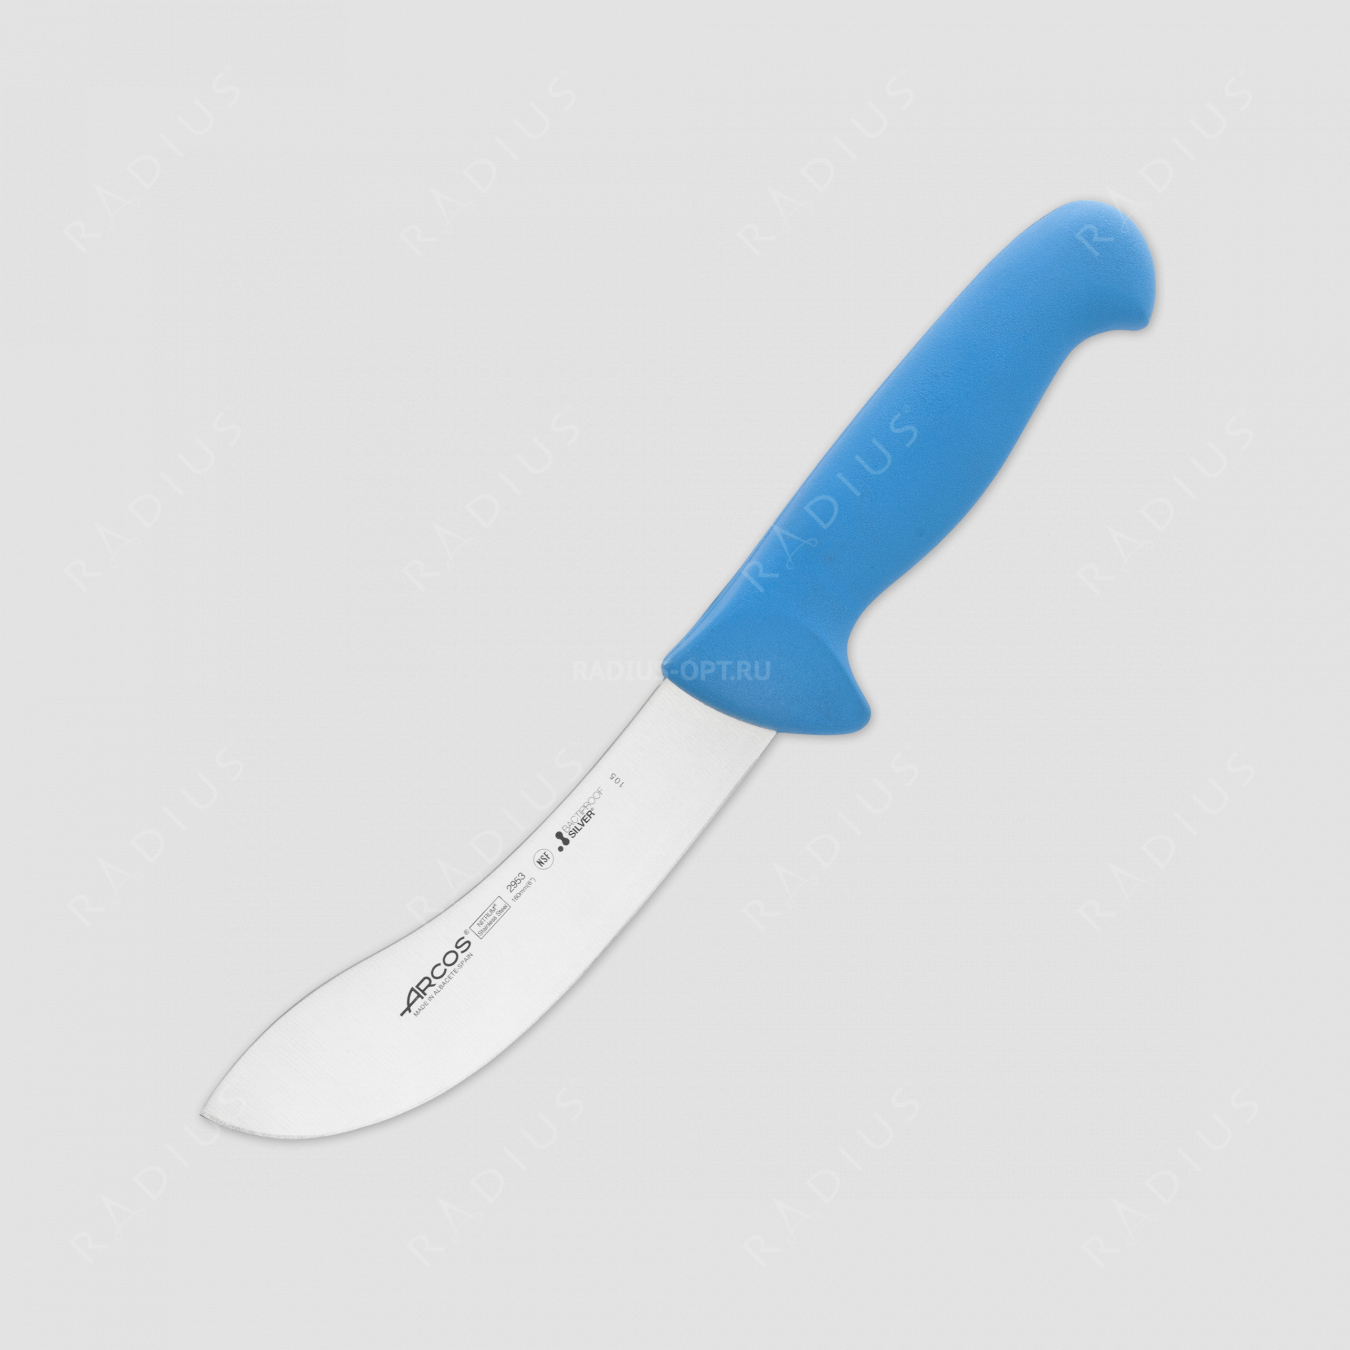 Нож кухонный для разделки 16 см, рукоять голубая, серия 2900, ARCOS, Испания